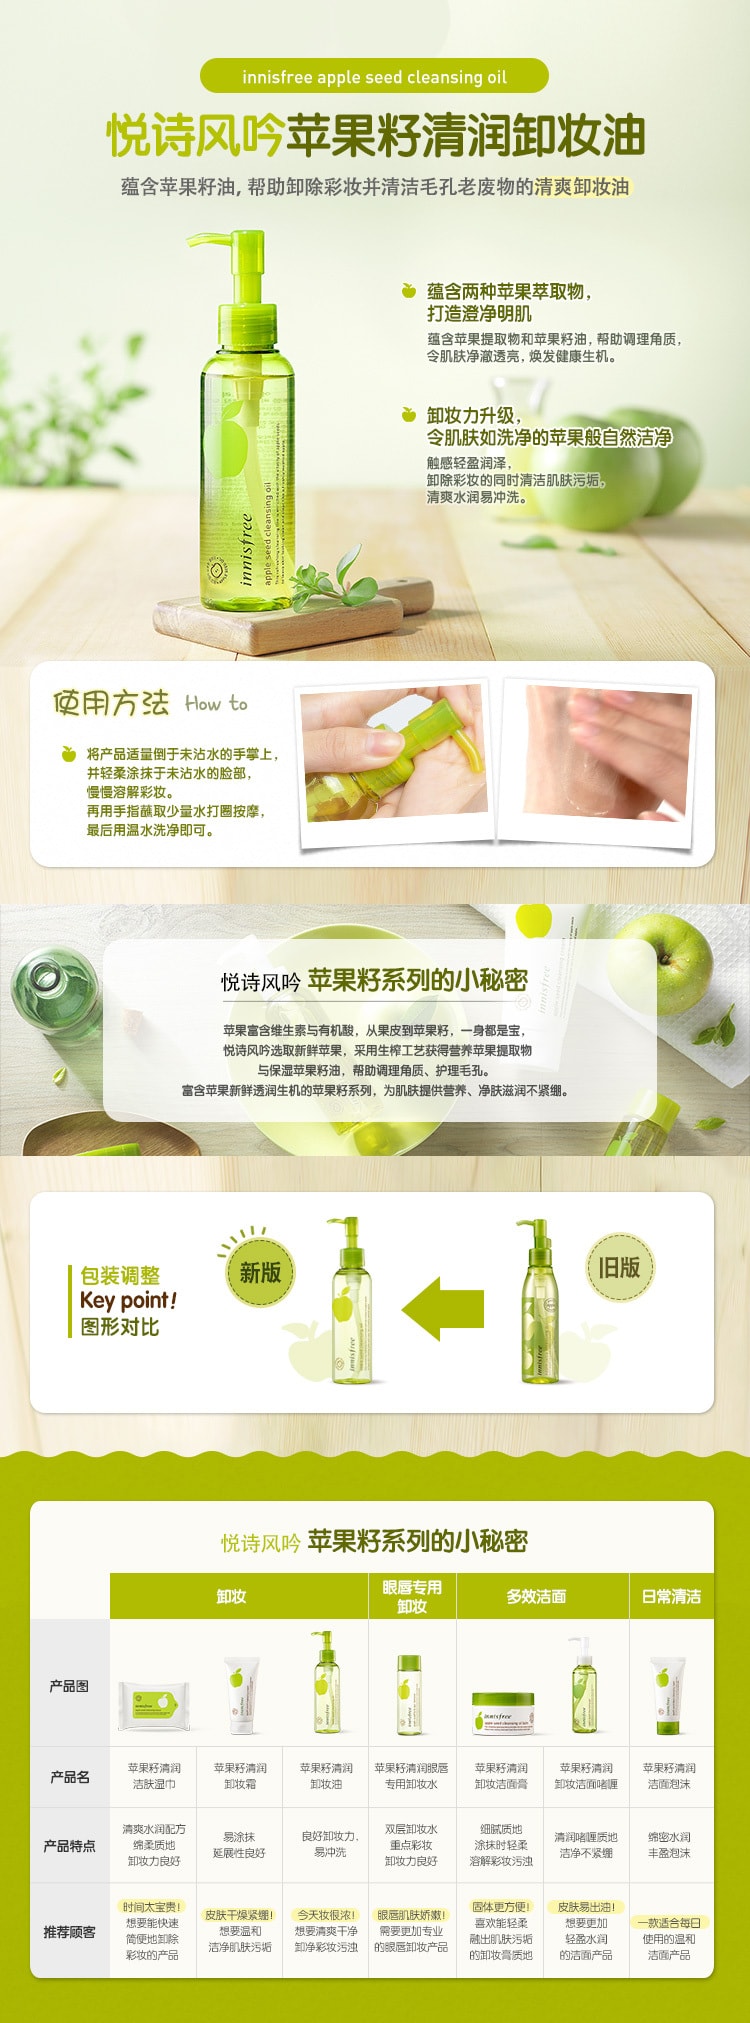 [韩国直邮] INNISFREE苹果籽清润卸妆油 150ML